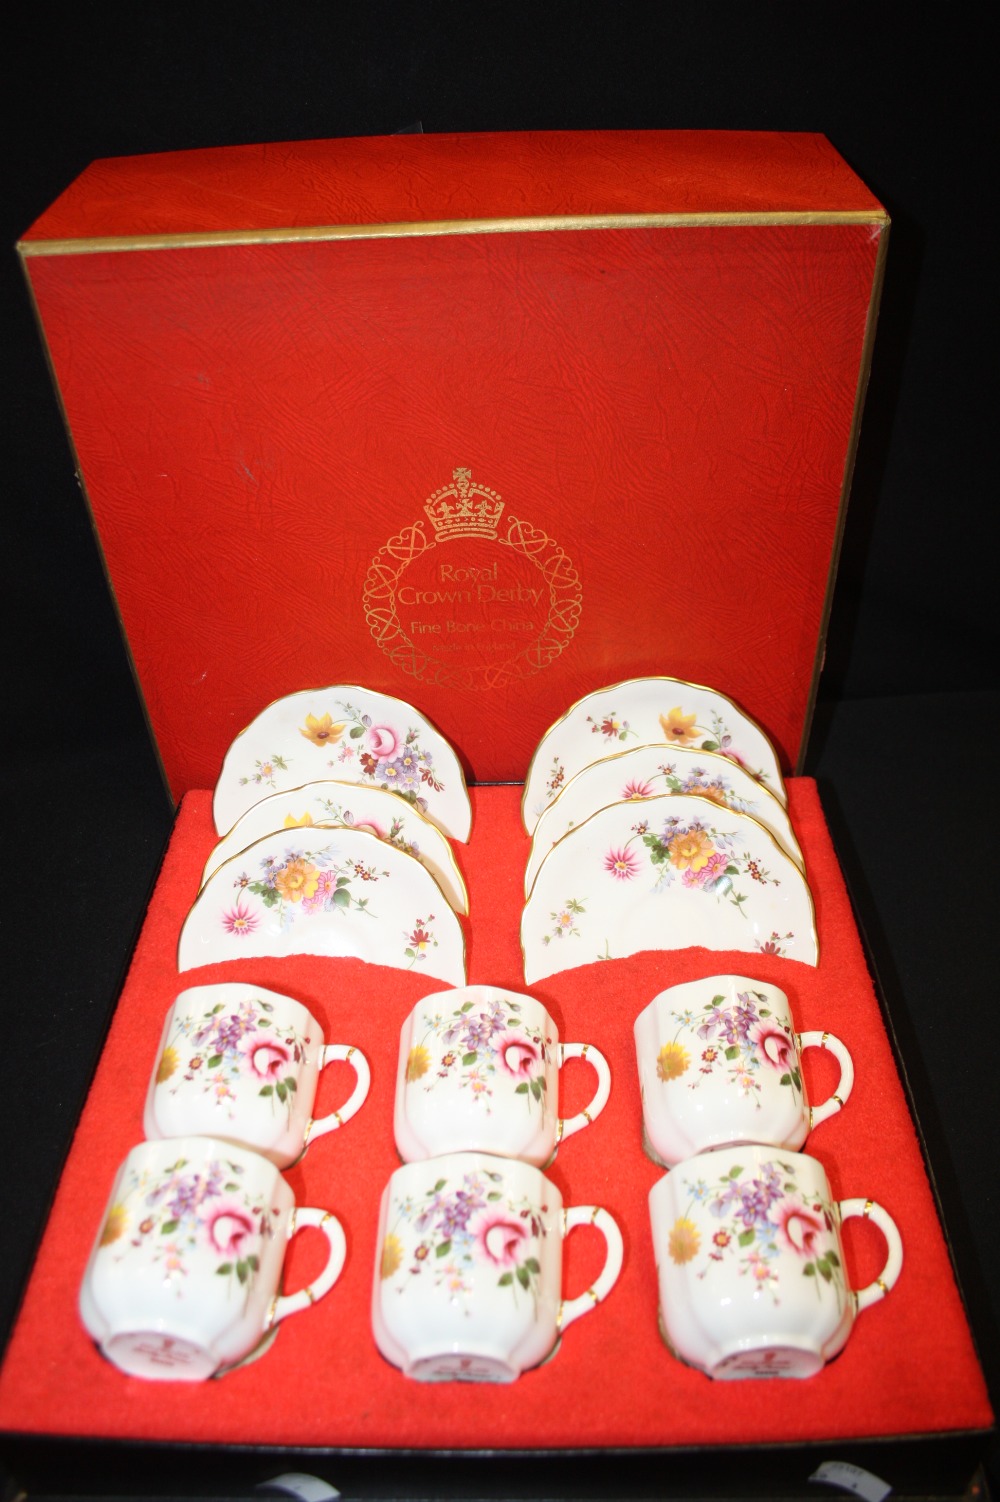 A Royal Crown Derby Posie pattern boxed coffee set